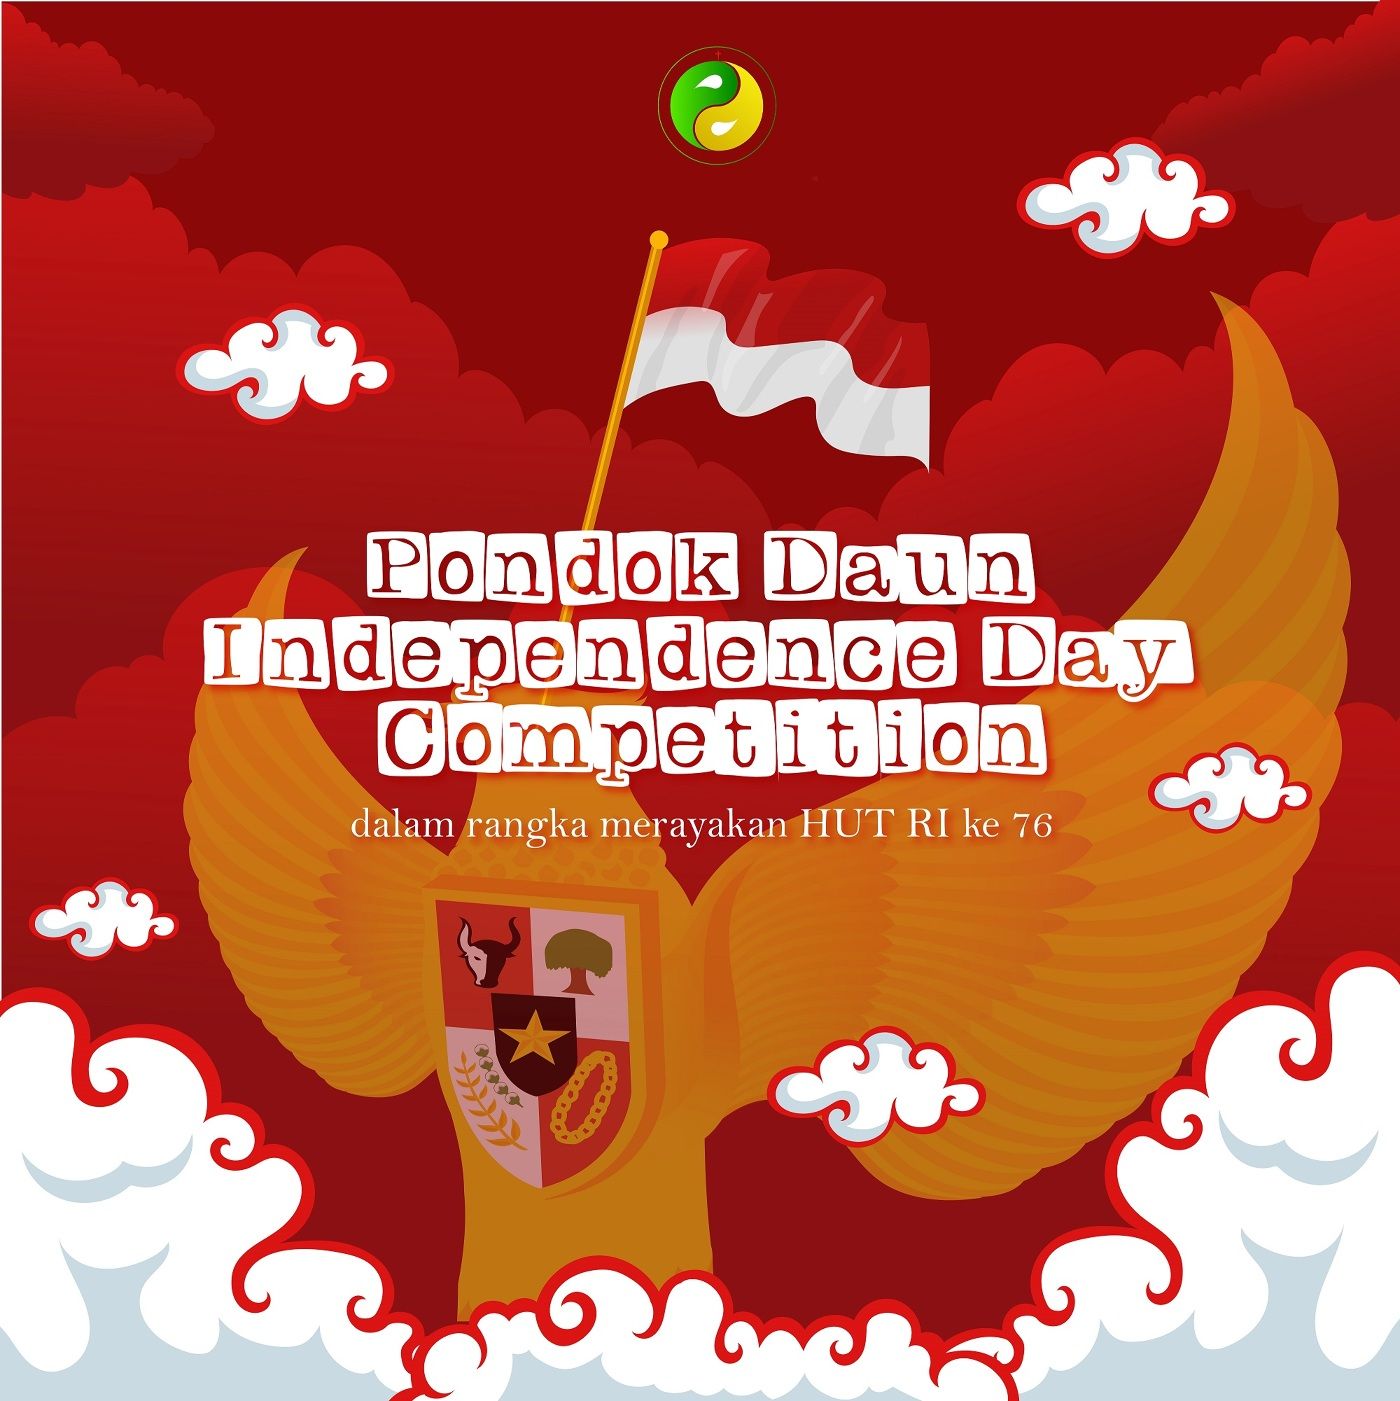 Pondok Daun Independence Day 2021